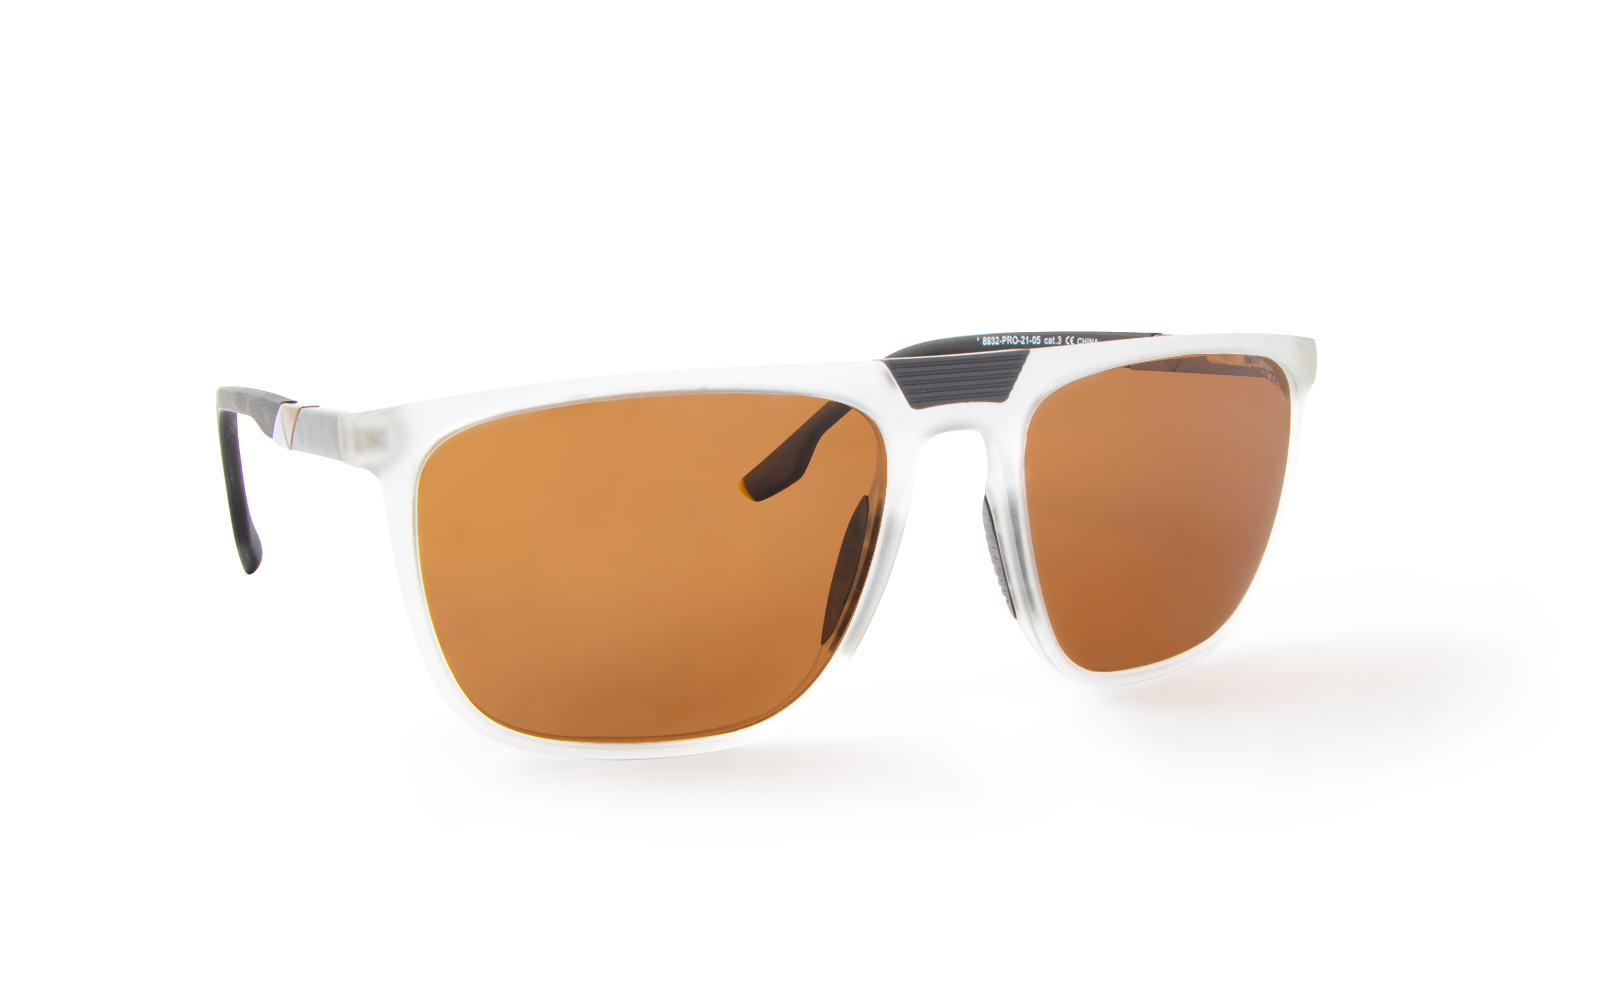 Invicta Men's Pro Diver Retro Square Sunglasses, Orange (8932-PRO-21-05)